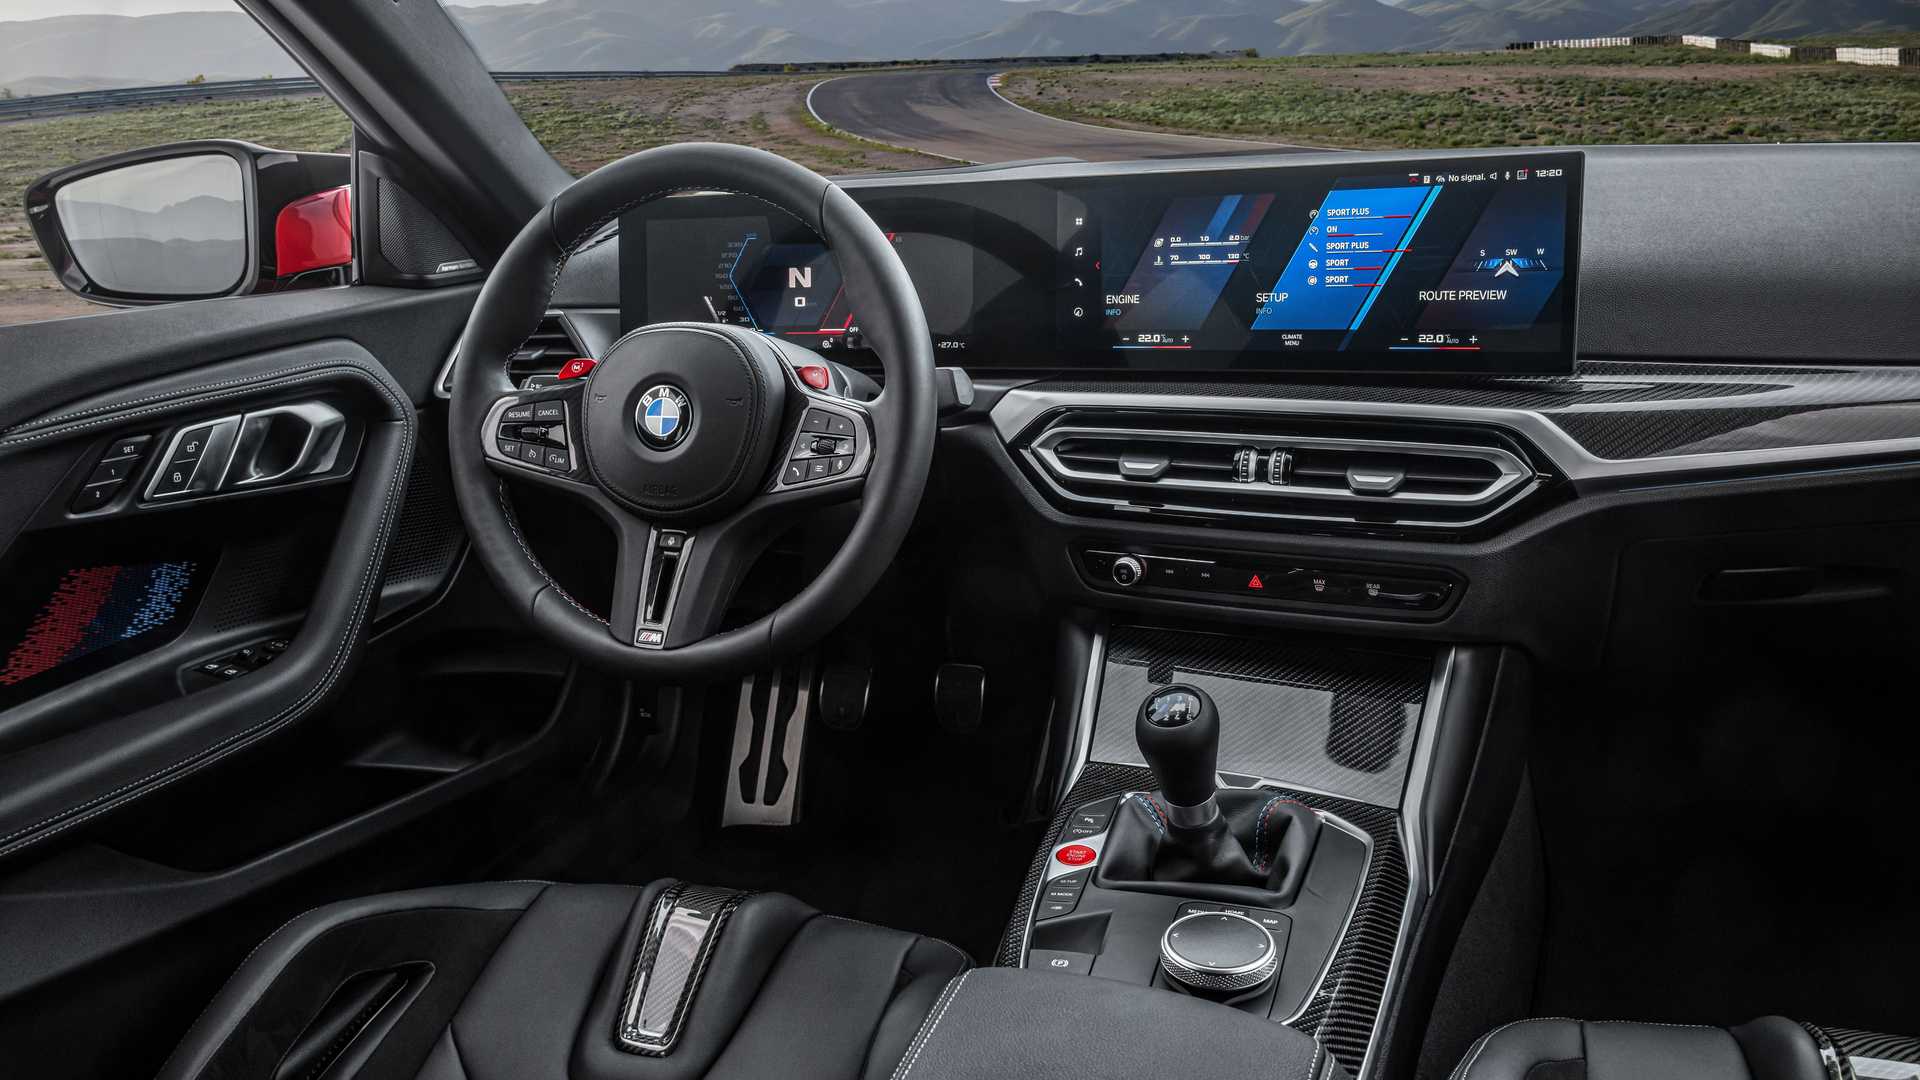 Yeni 2023 BMW M2 tanıtıldı: Yeni tasarım ve 460 hp güç